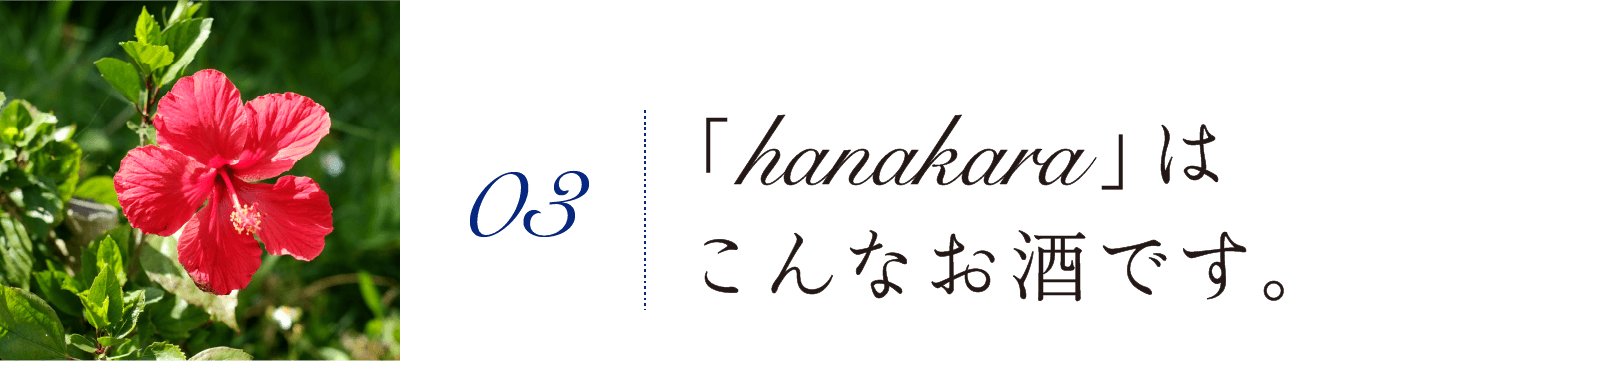 03. 「hanakara」はこんなお酒です。